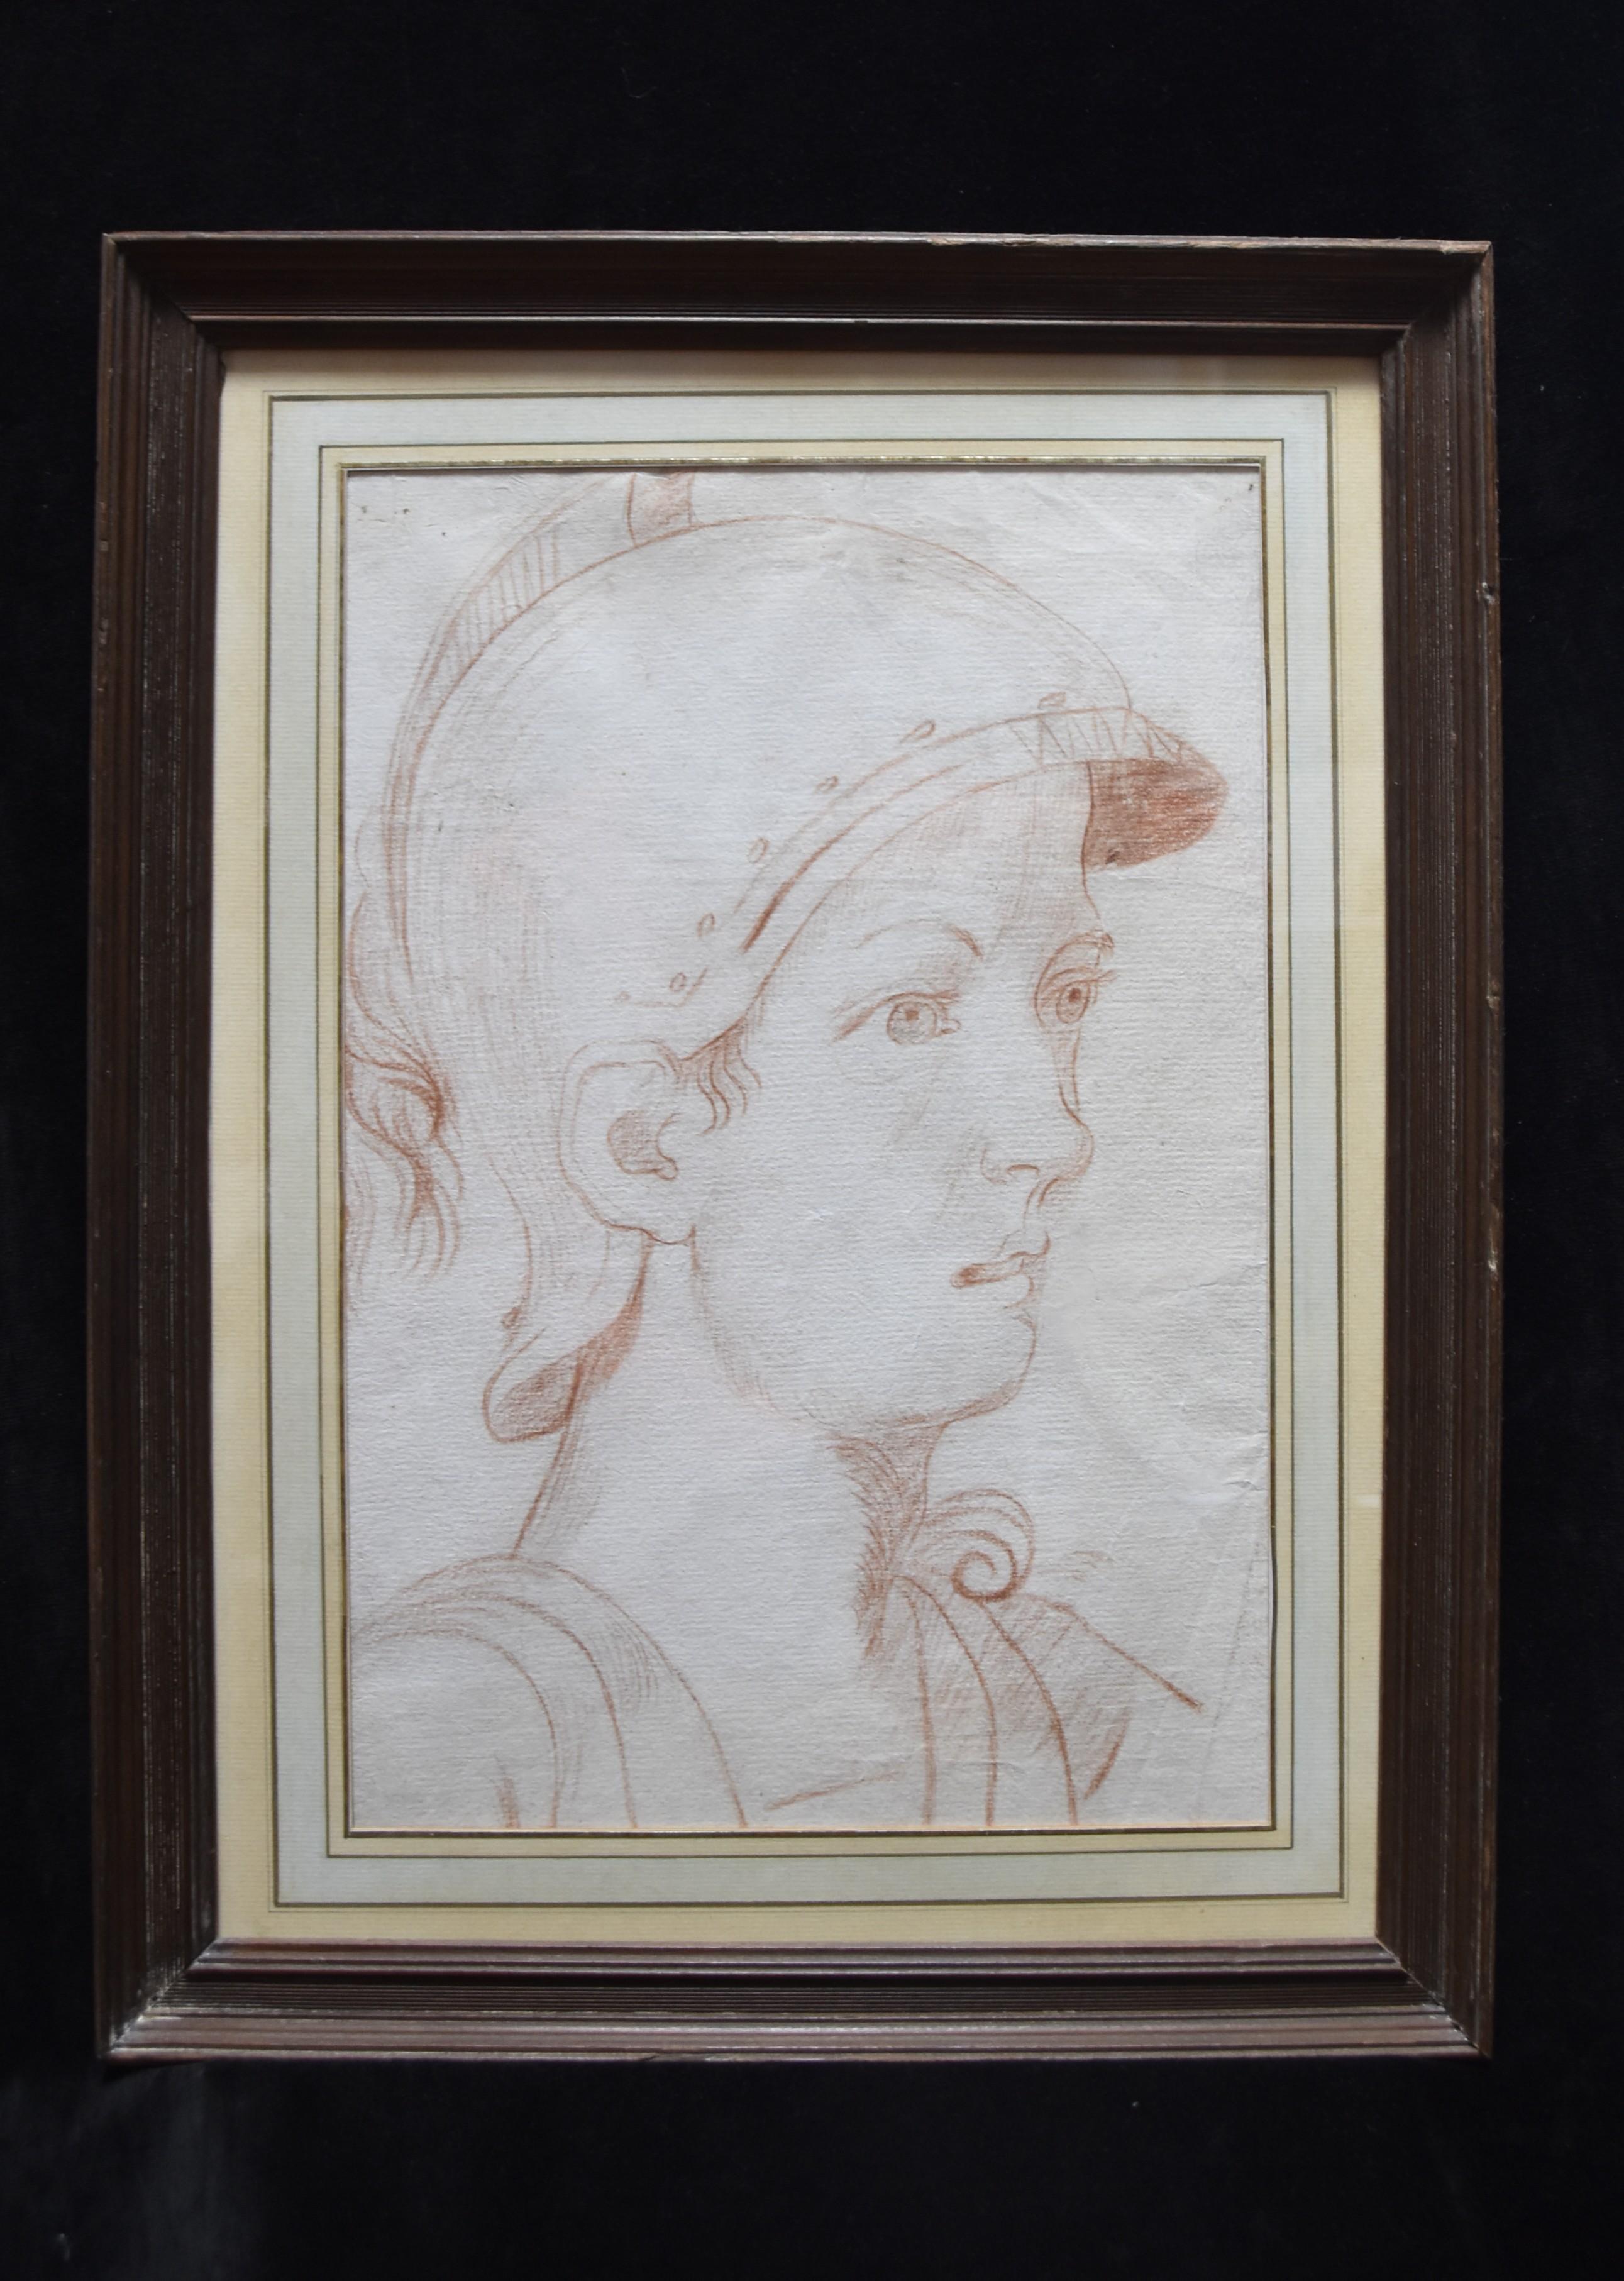 Italienische Schule des 18. Jahrhunderts,  Ein antiker Soldat im Profil, rote Kreide auf Papier (Grau), Figurative Art, von Unknown